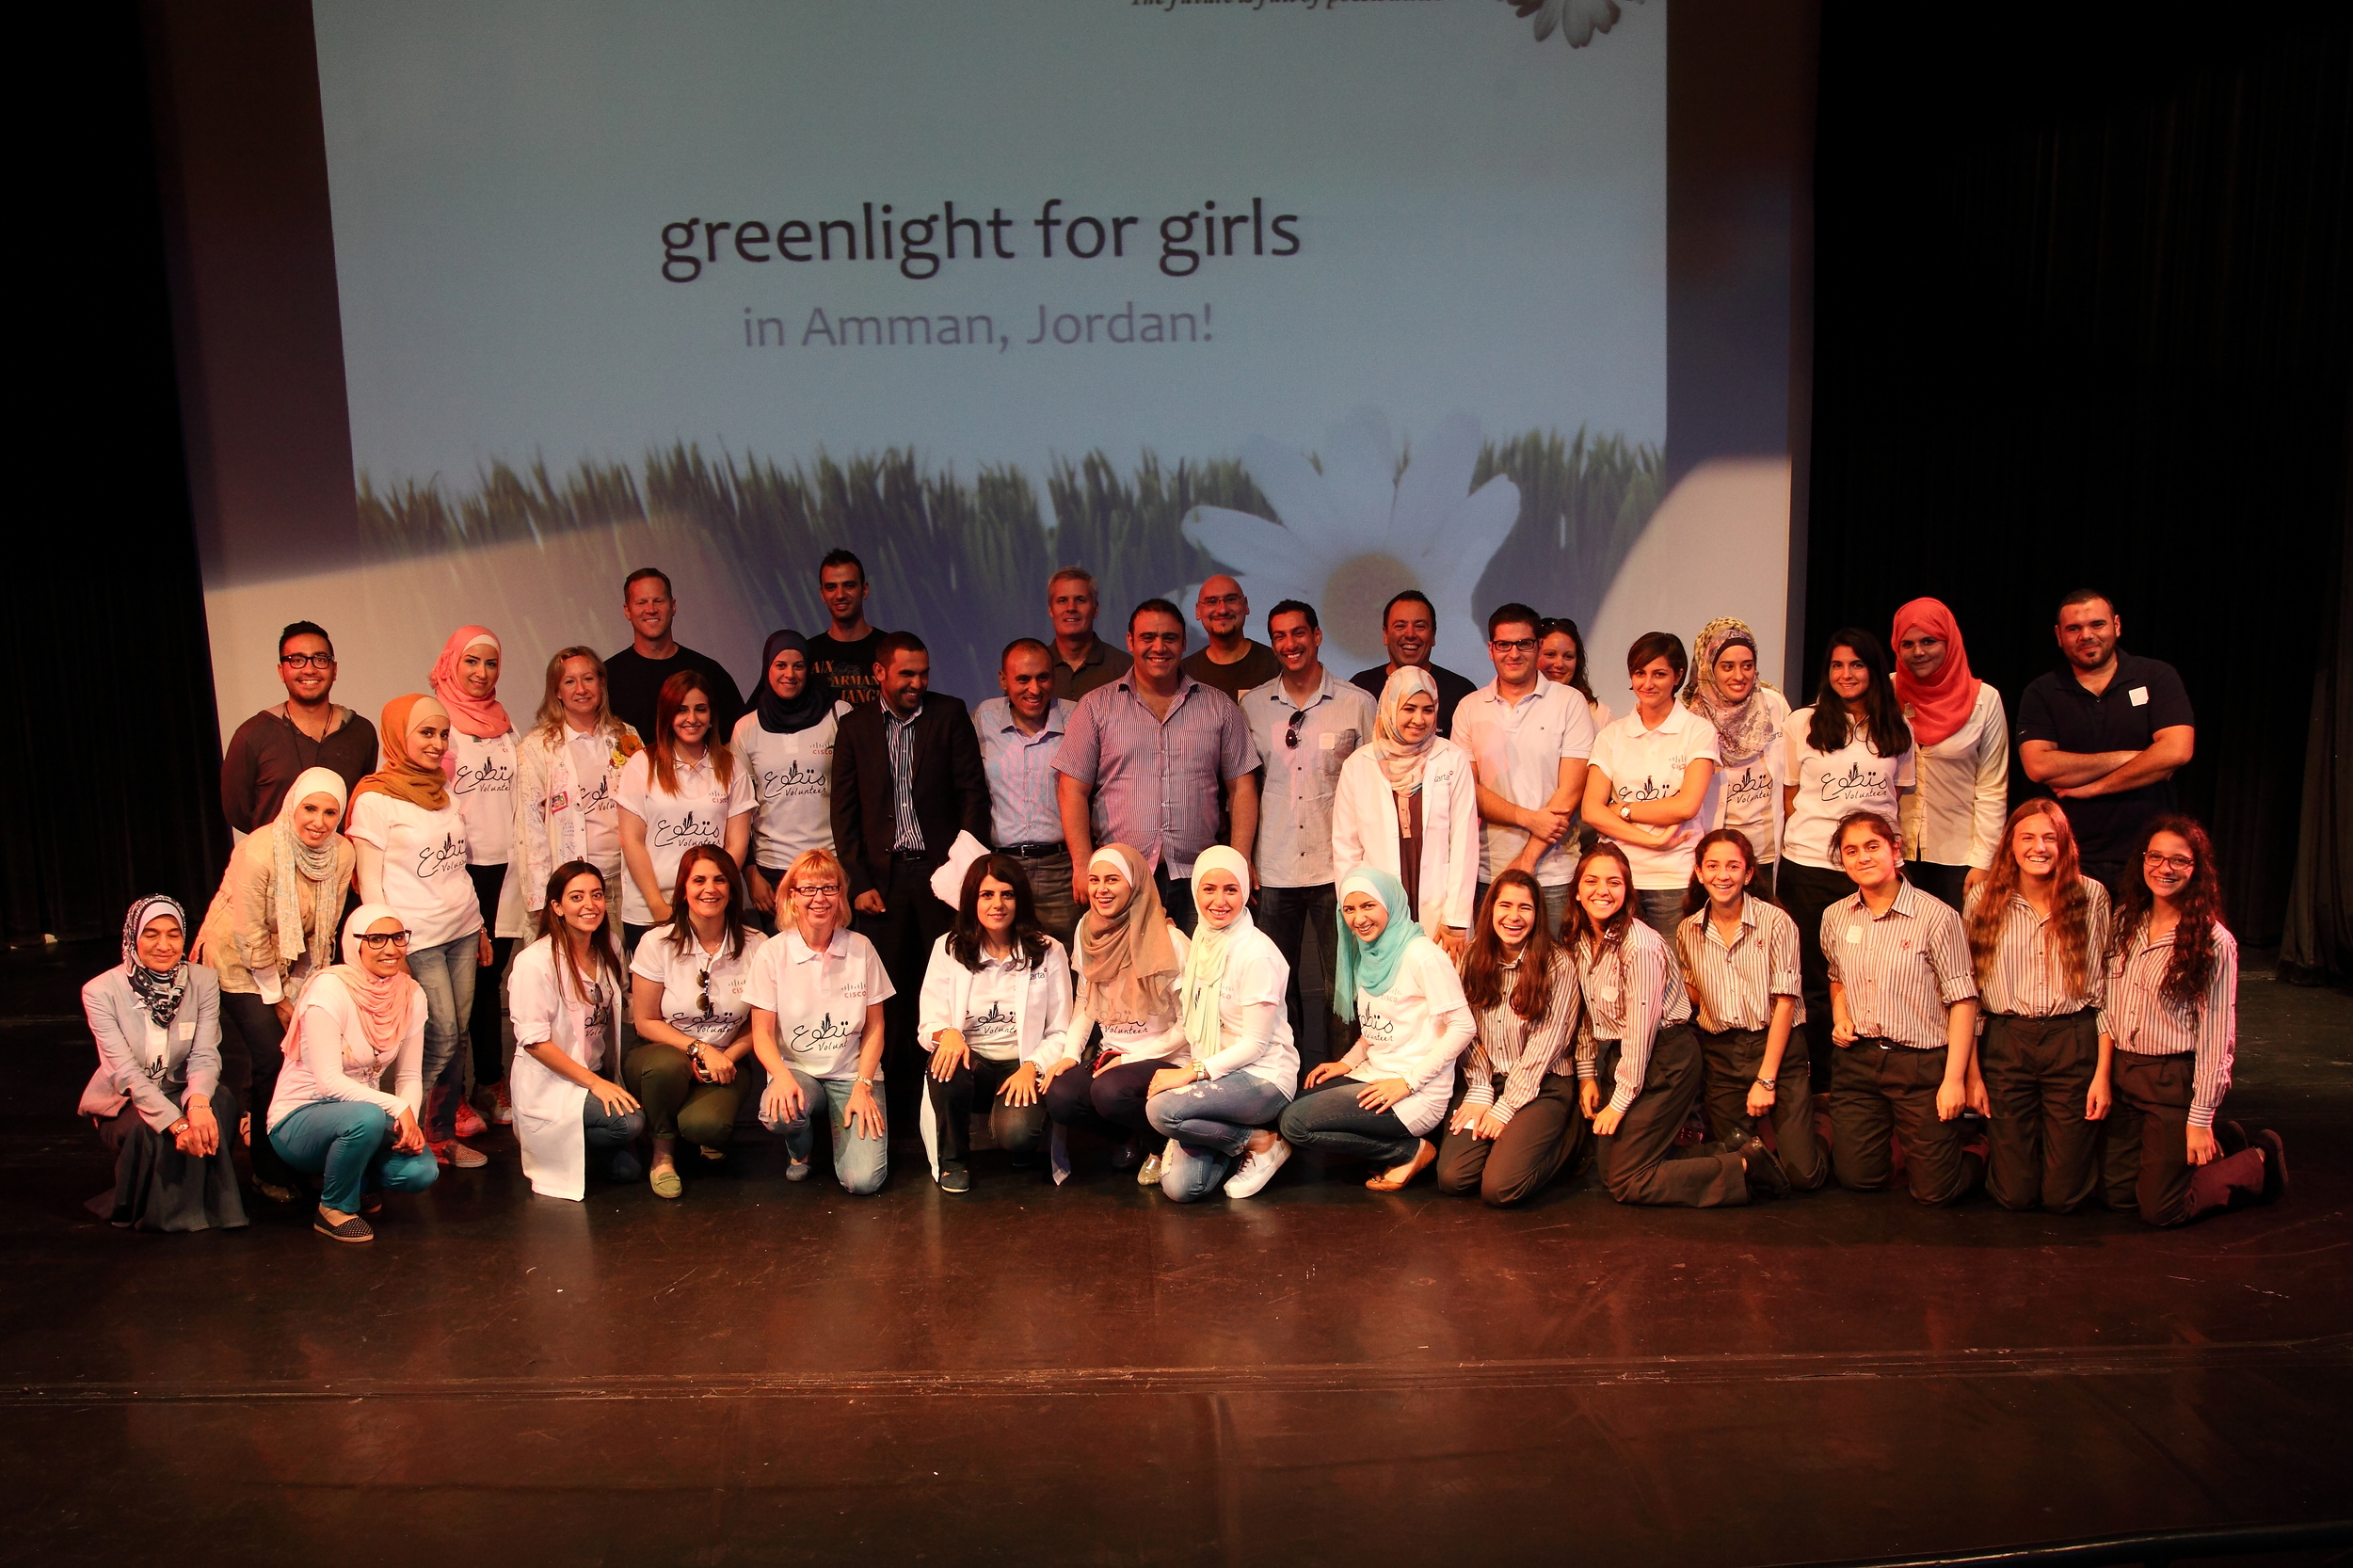 G4g@Jordan 2014: Our dedicated volunteers